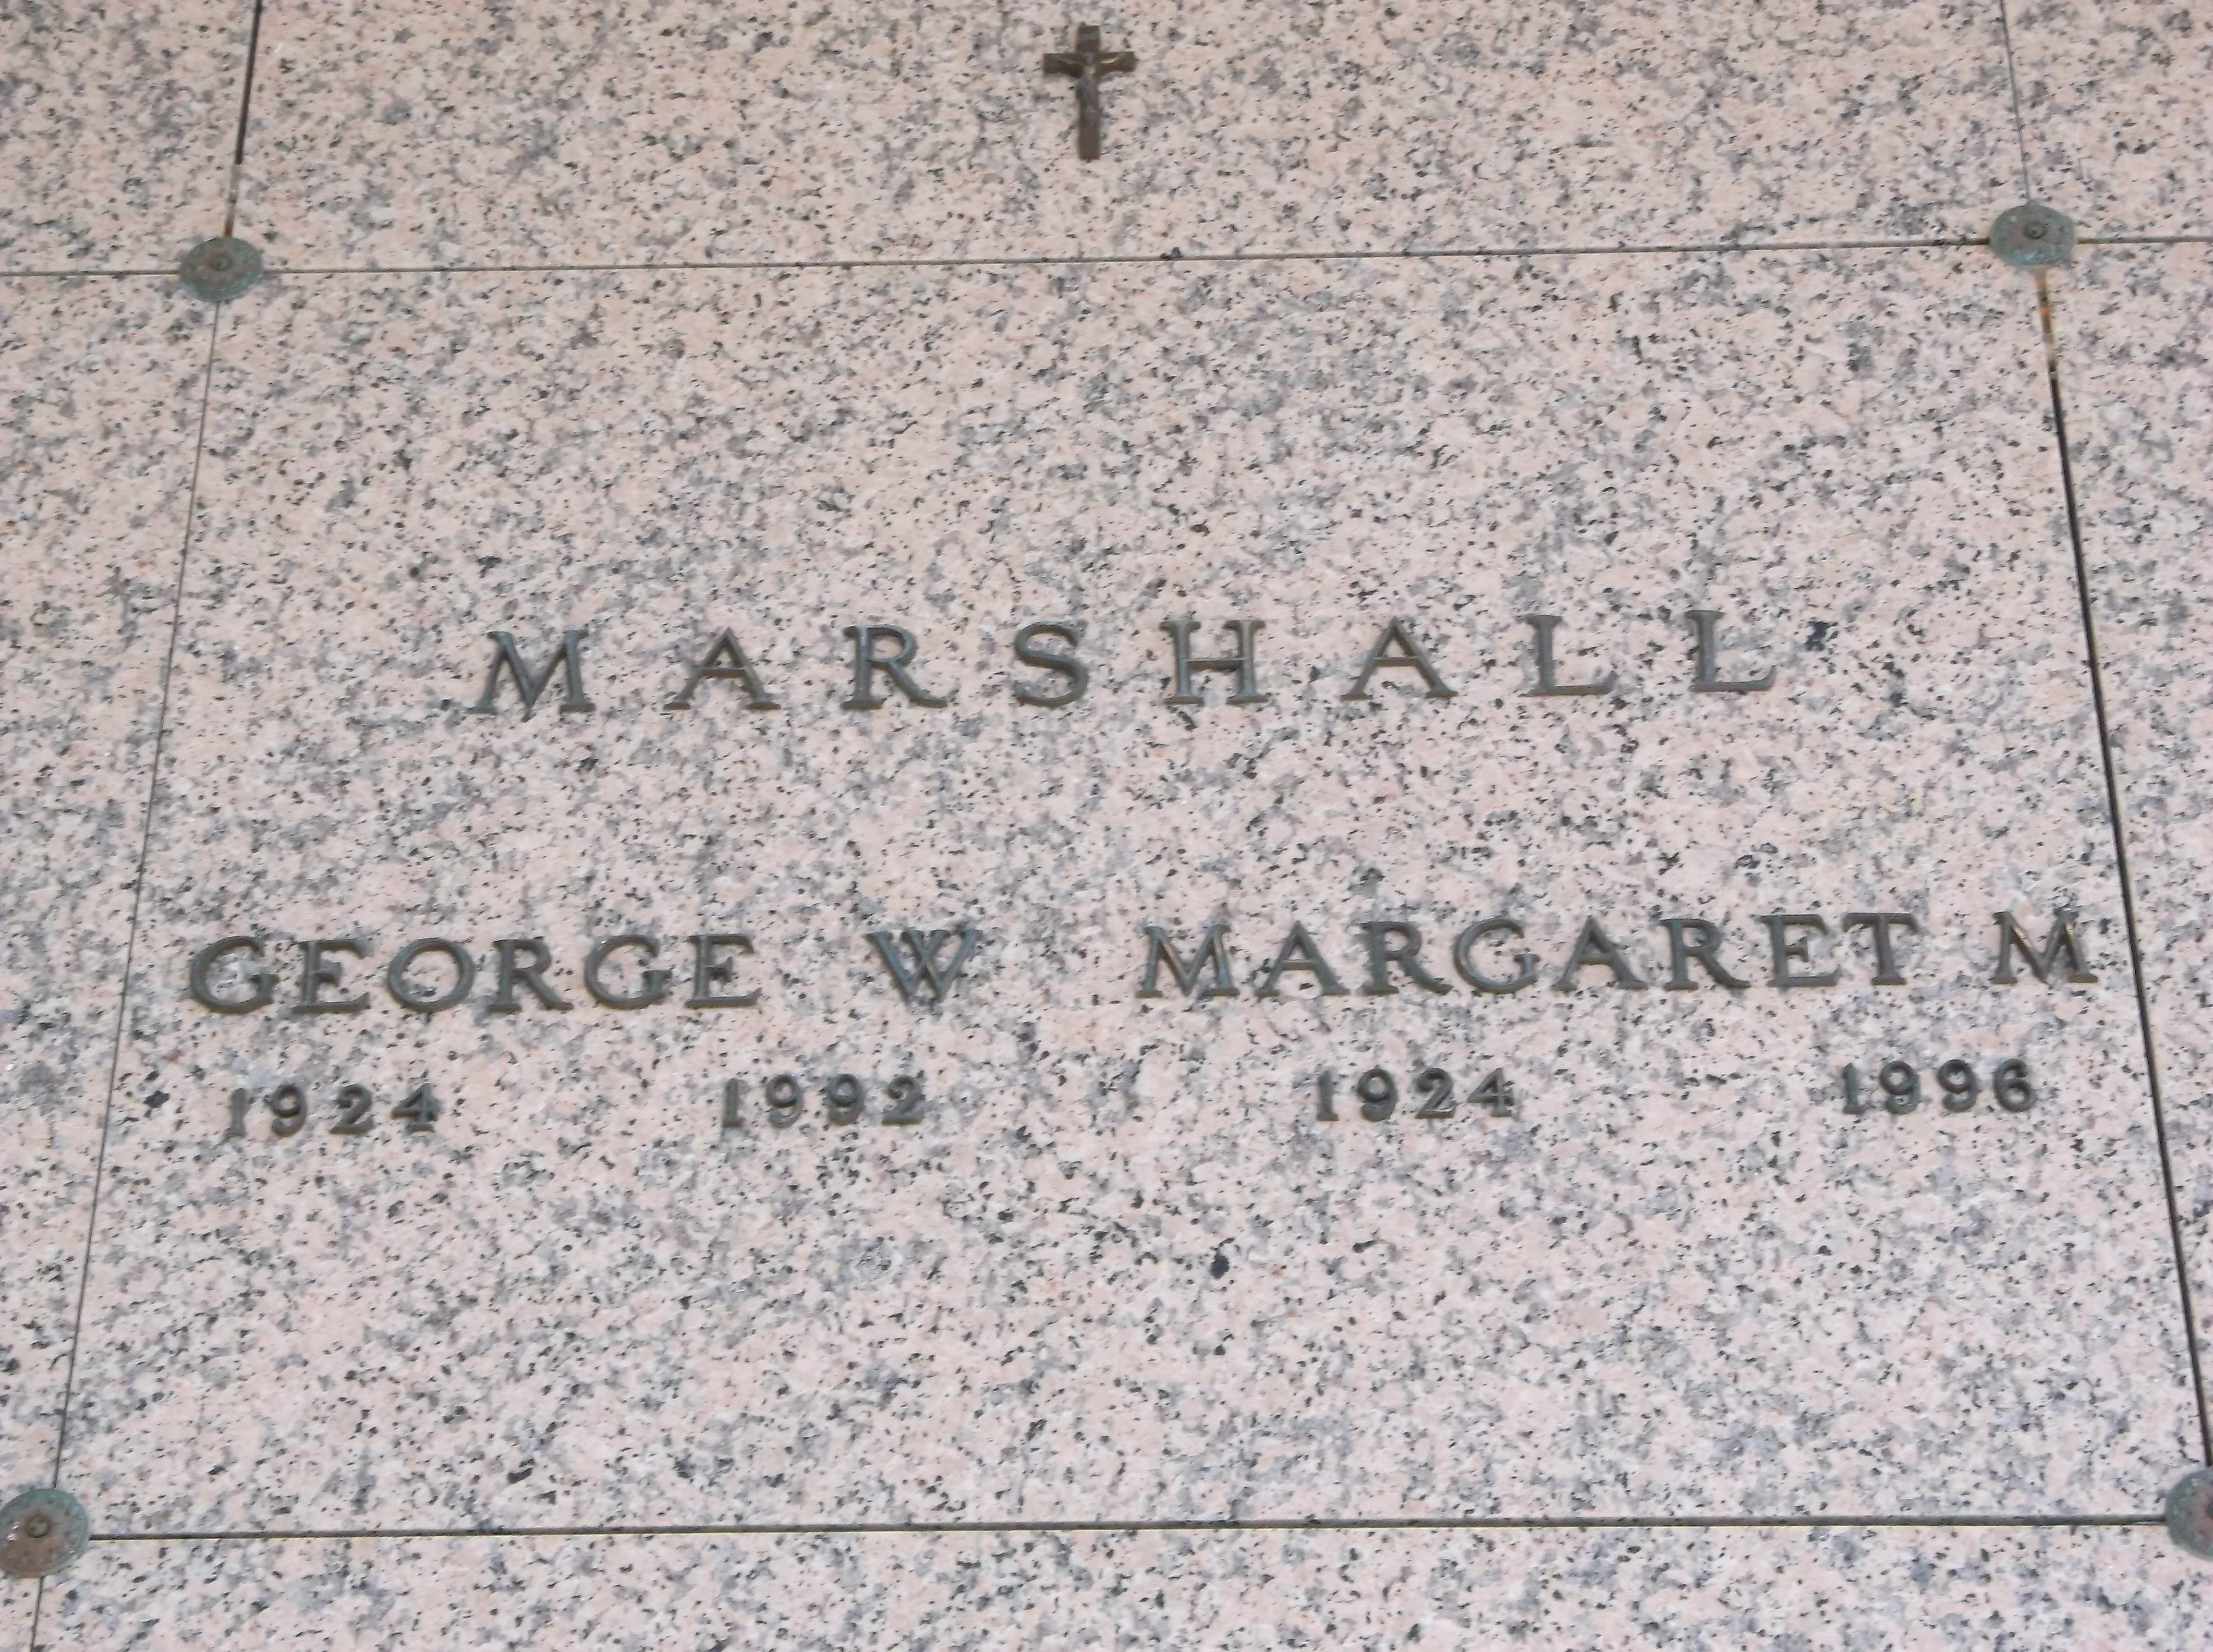 George W Marshall